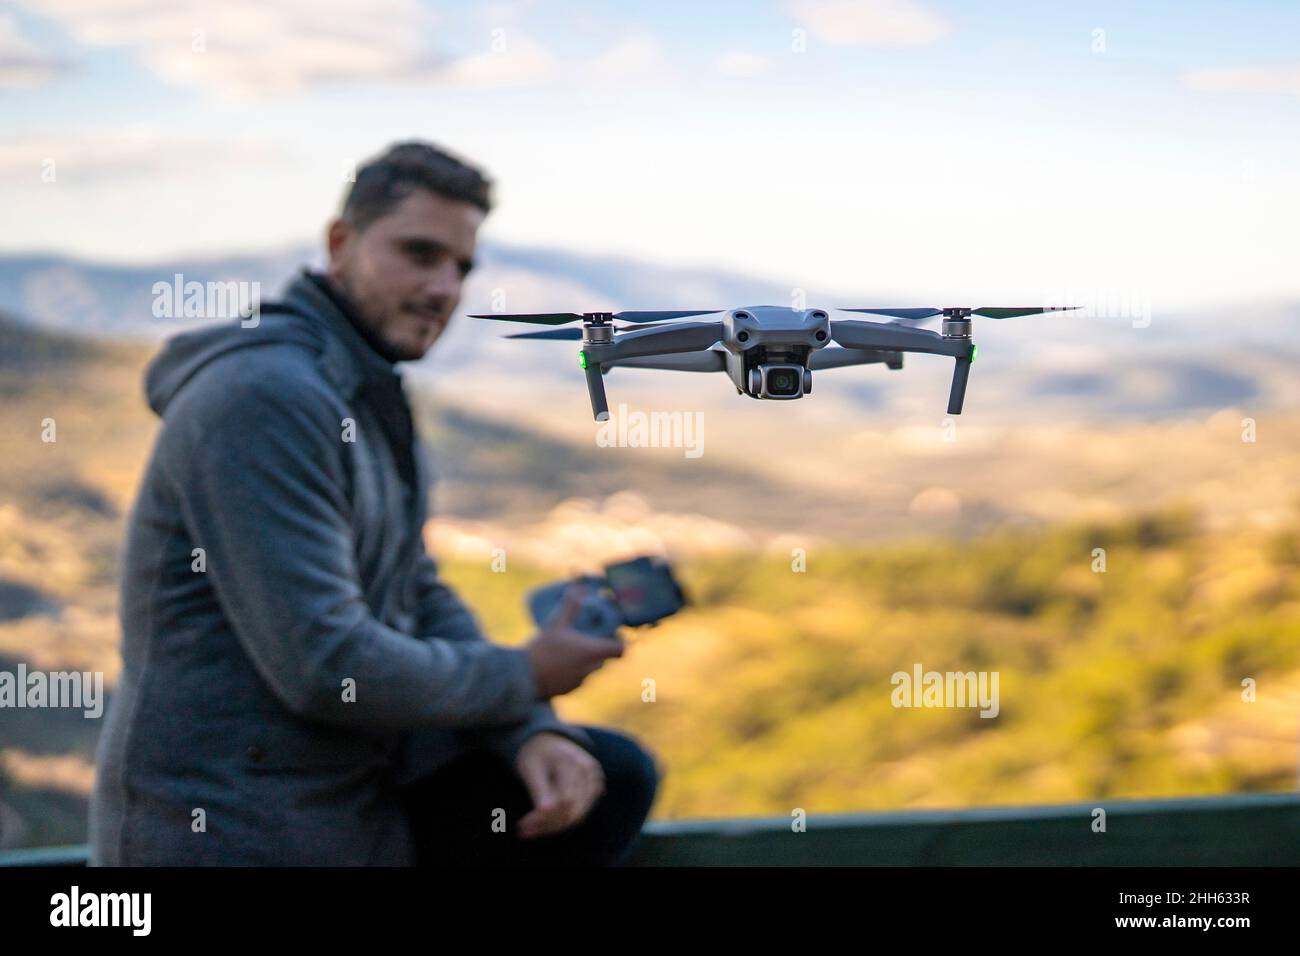 Drohne, die vor einem Mann auf dem Geländer sitzt Stockfoto